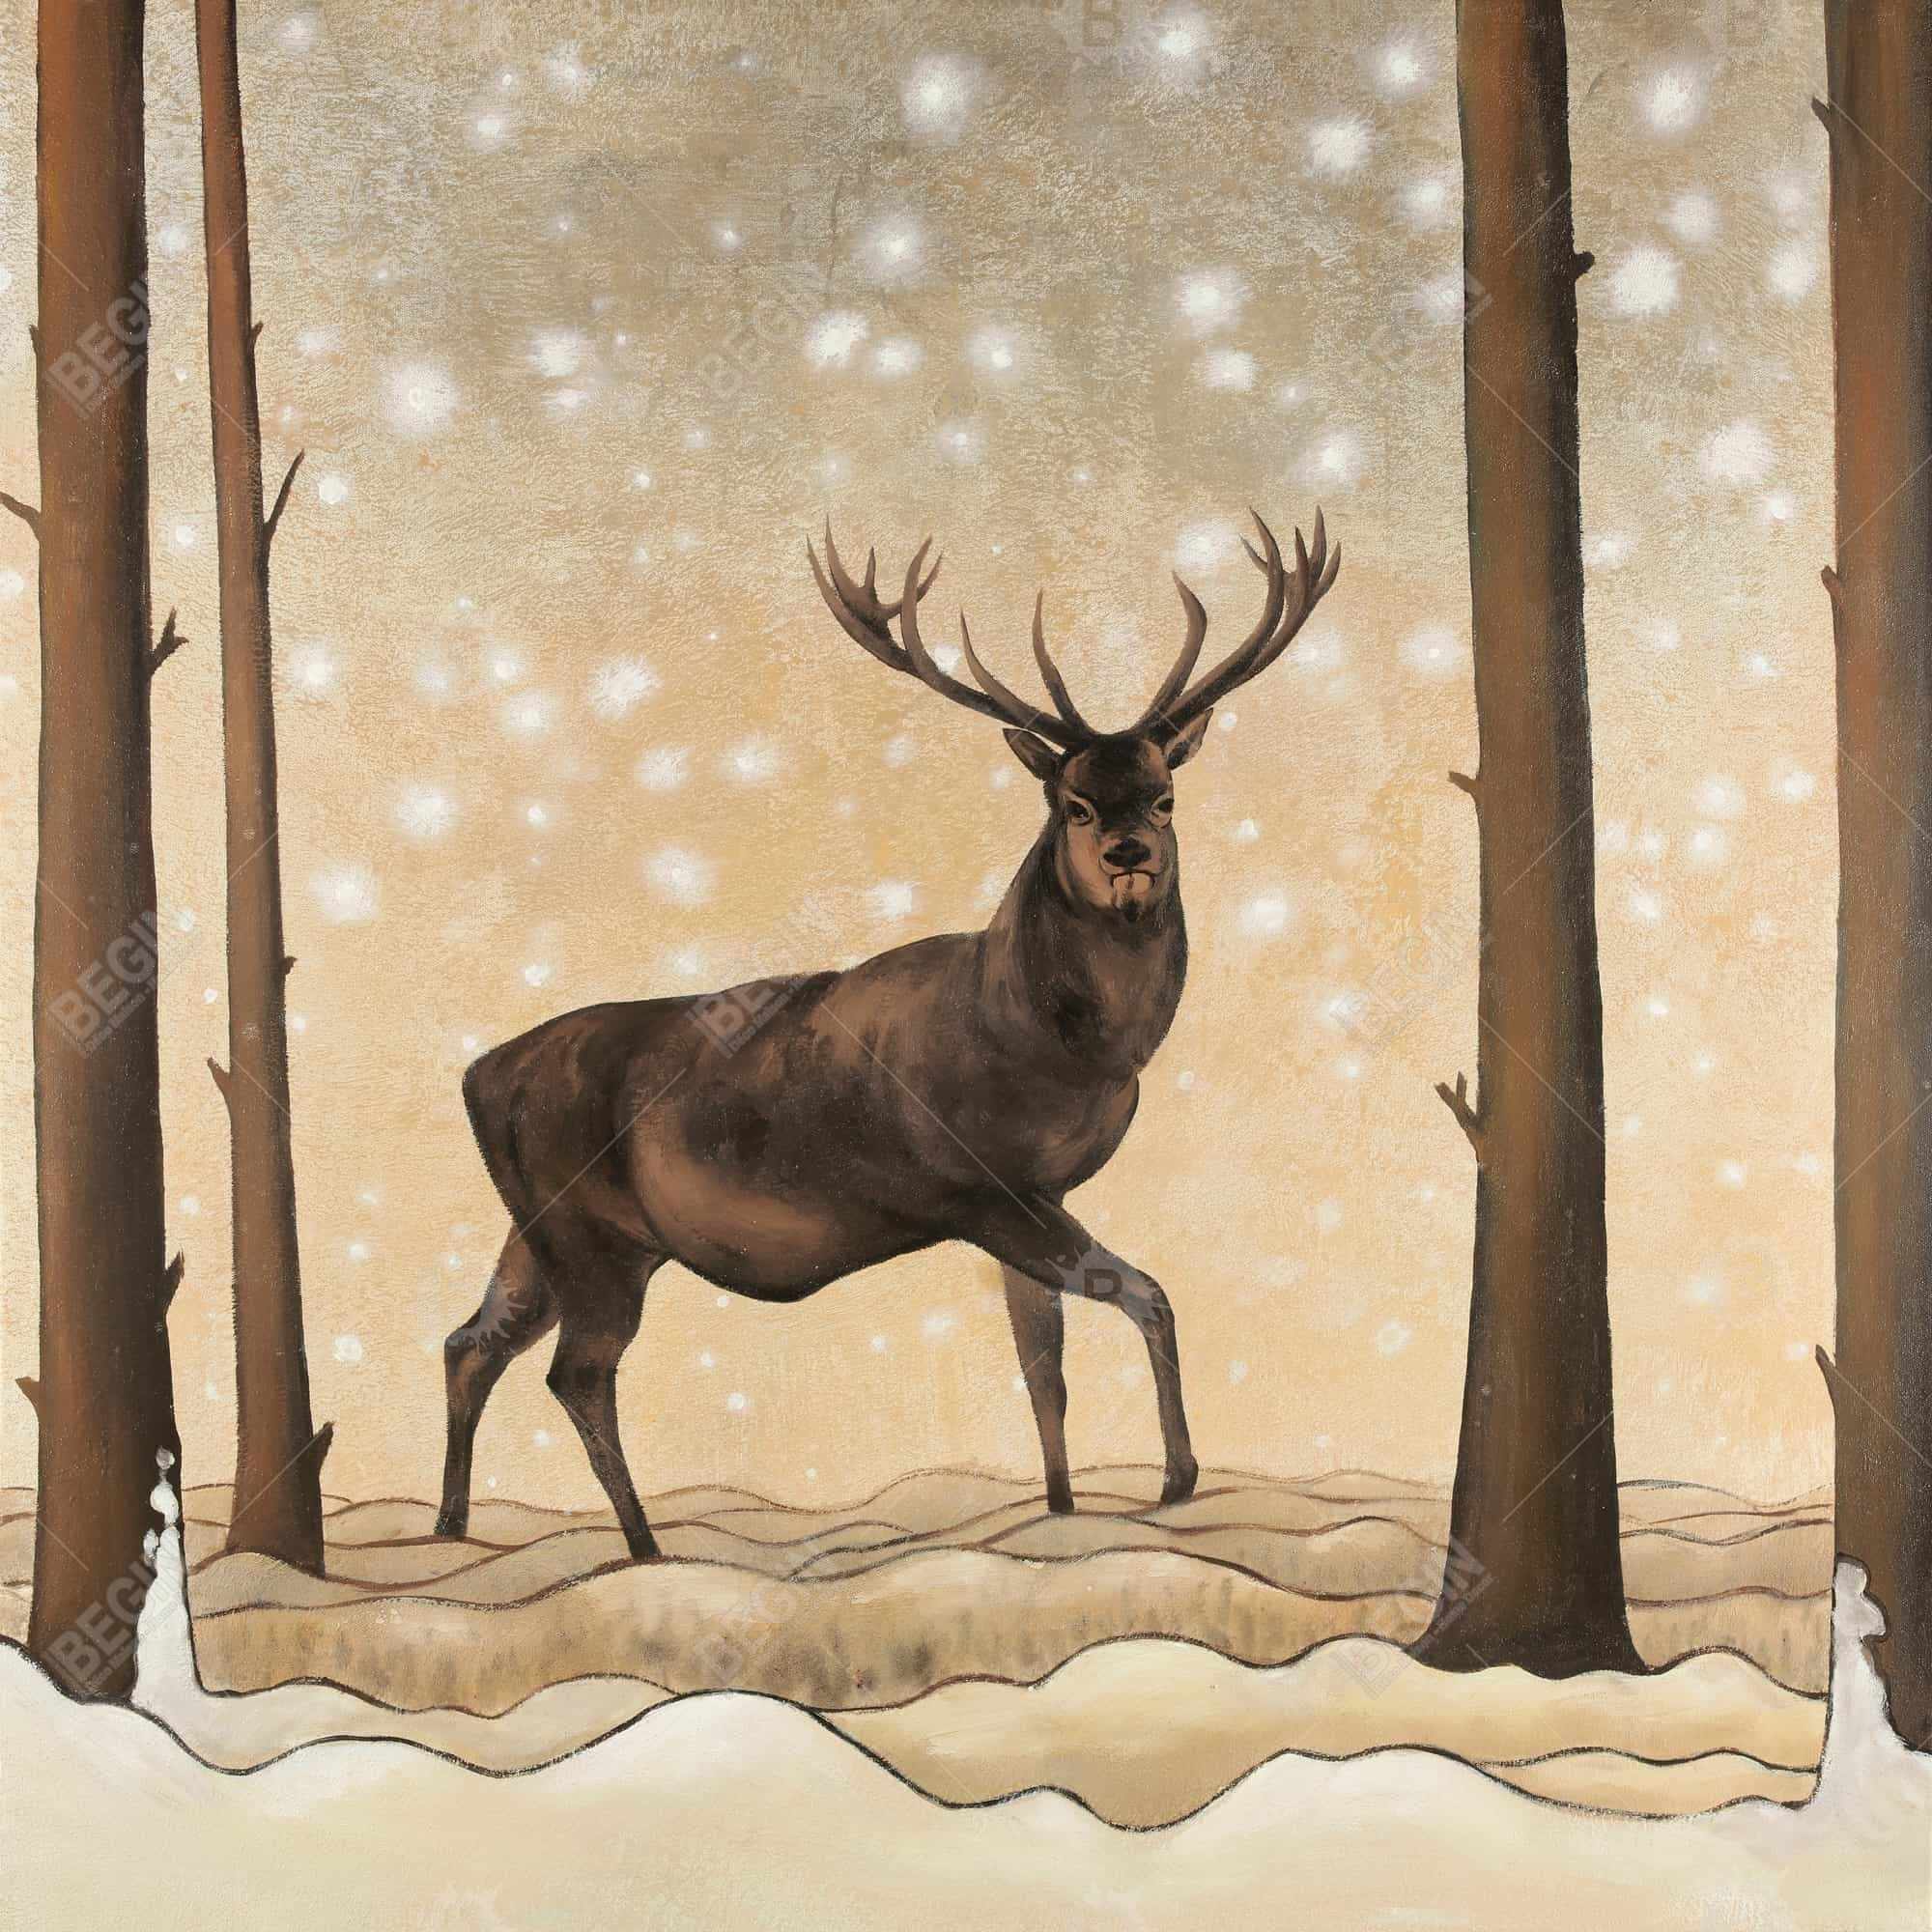 Roe deer in a winter landscape